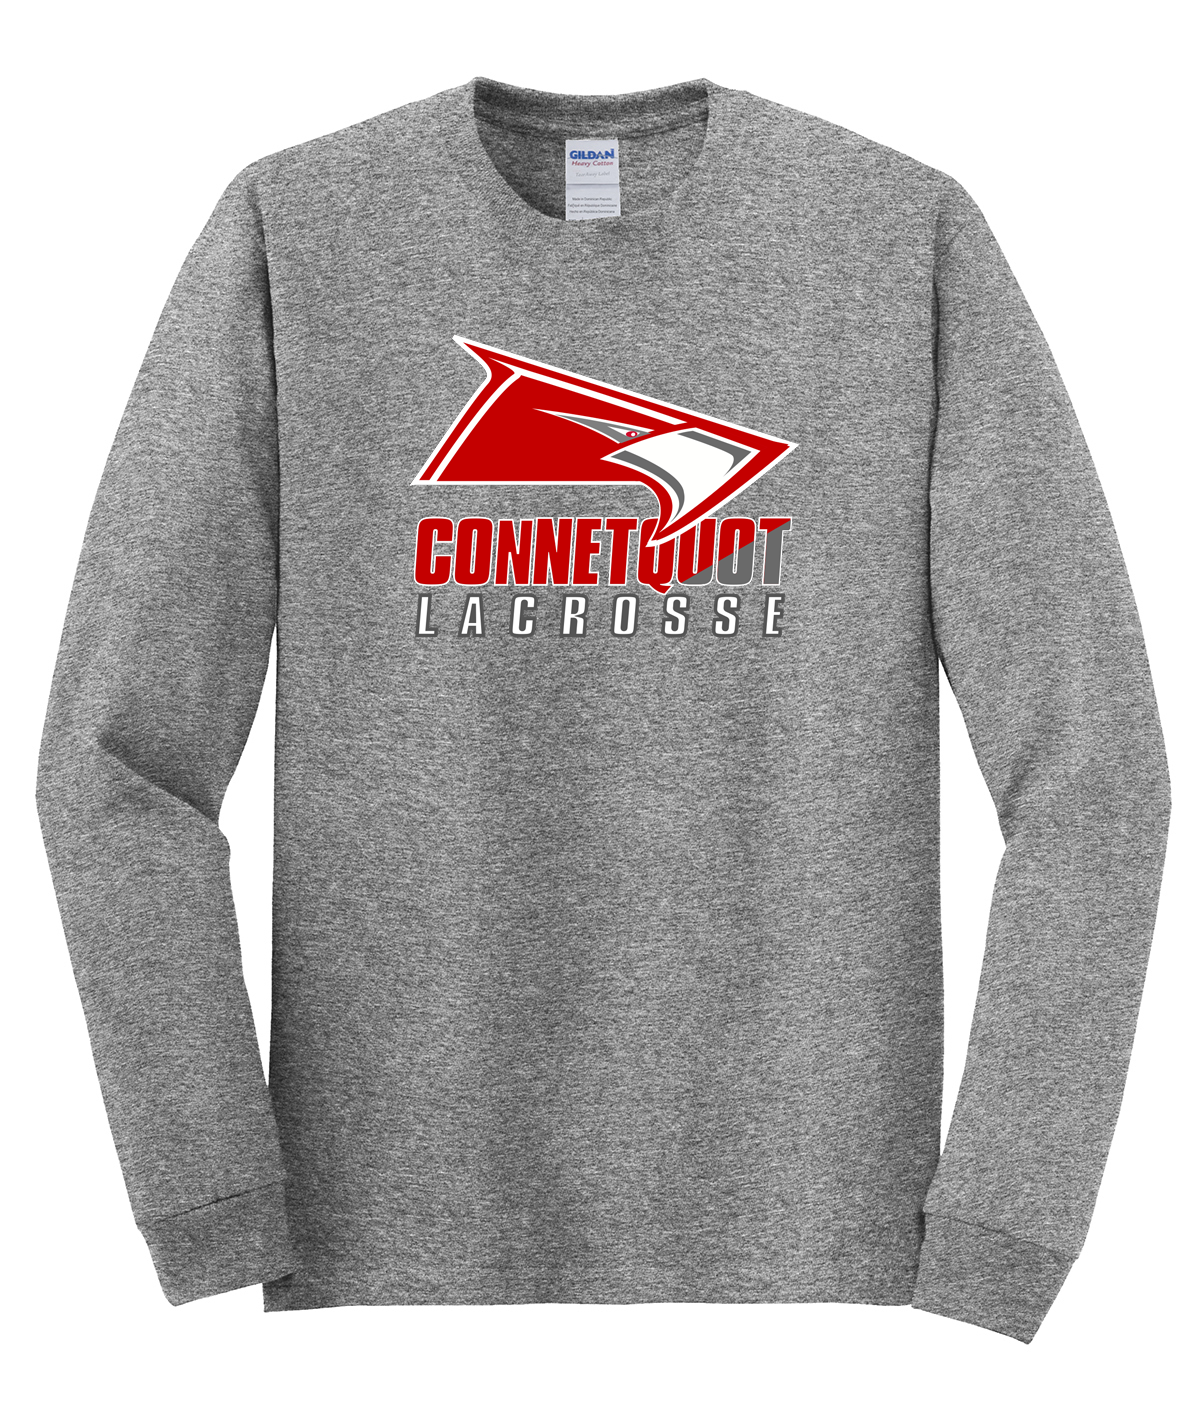 Connetquot Lacrosse Cotton Long Sleeve Shirt